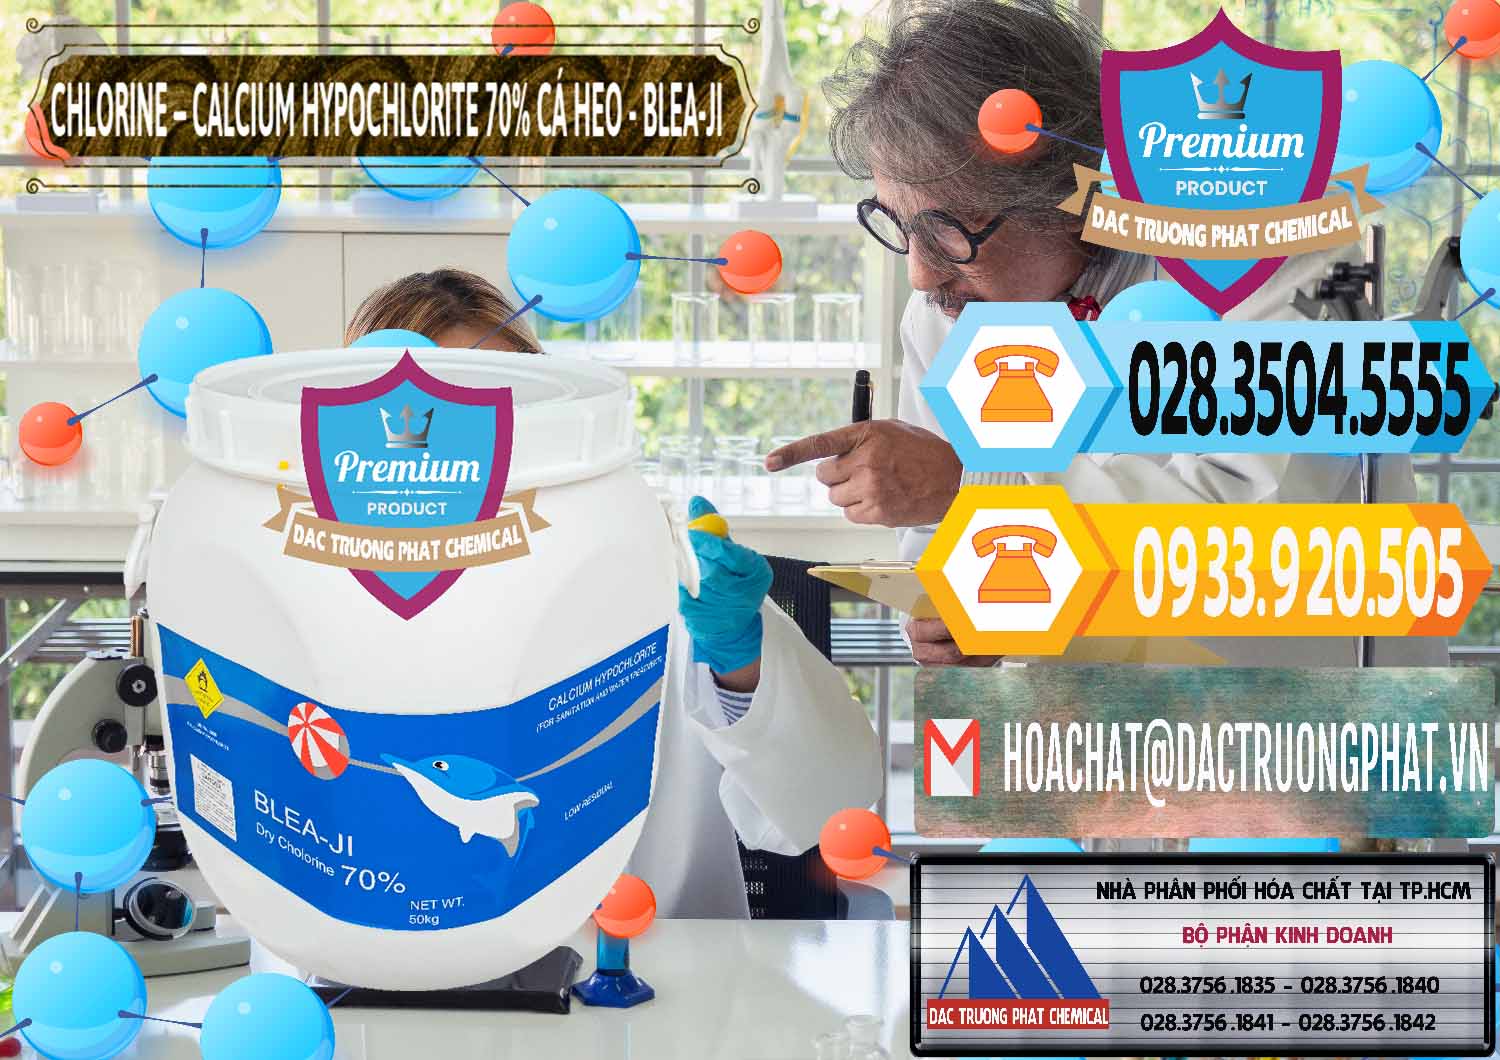 Nơi bán _ cung ứng Clorin - Chlorine Cá Heo 70% Blea-Ji Trung Quốc China - 0056 - Nhà phân phối _ bán hóa chất tại TP.HCM - hoachattayrua.net